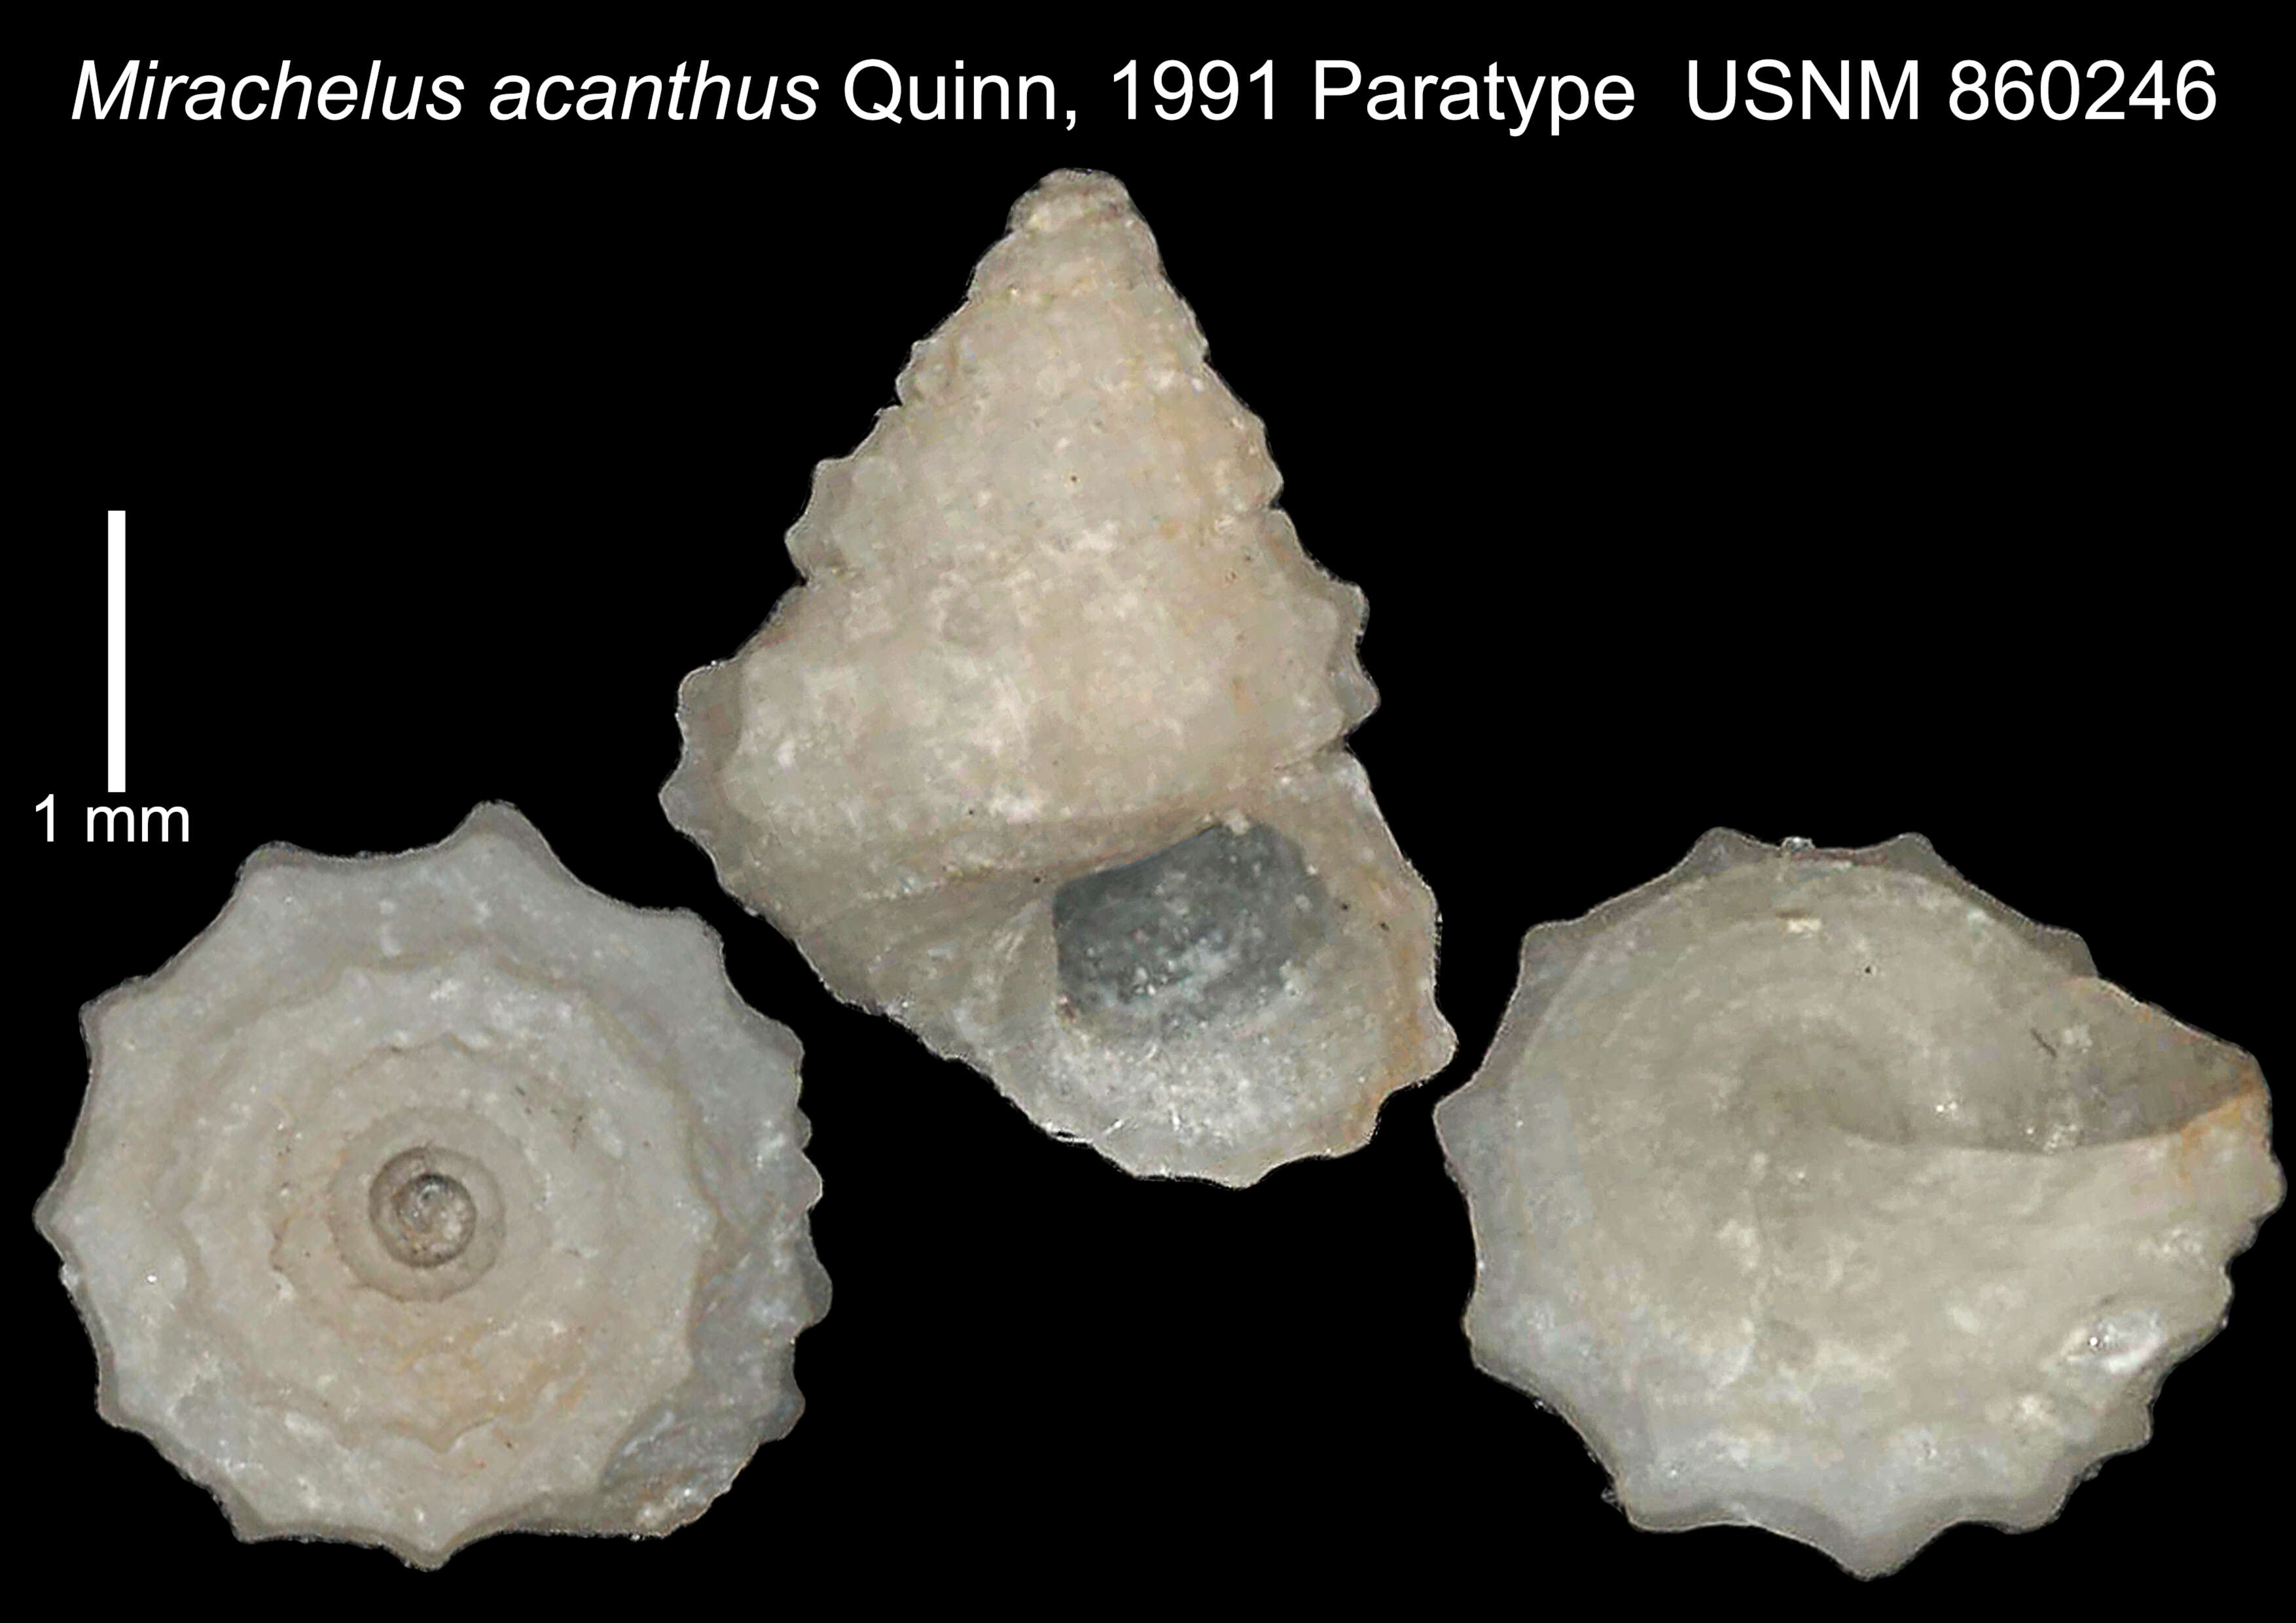 Image of Mirachelus acanthus Quinn 1991